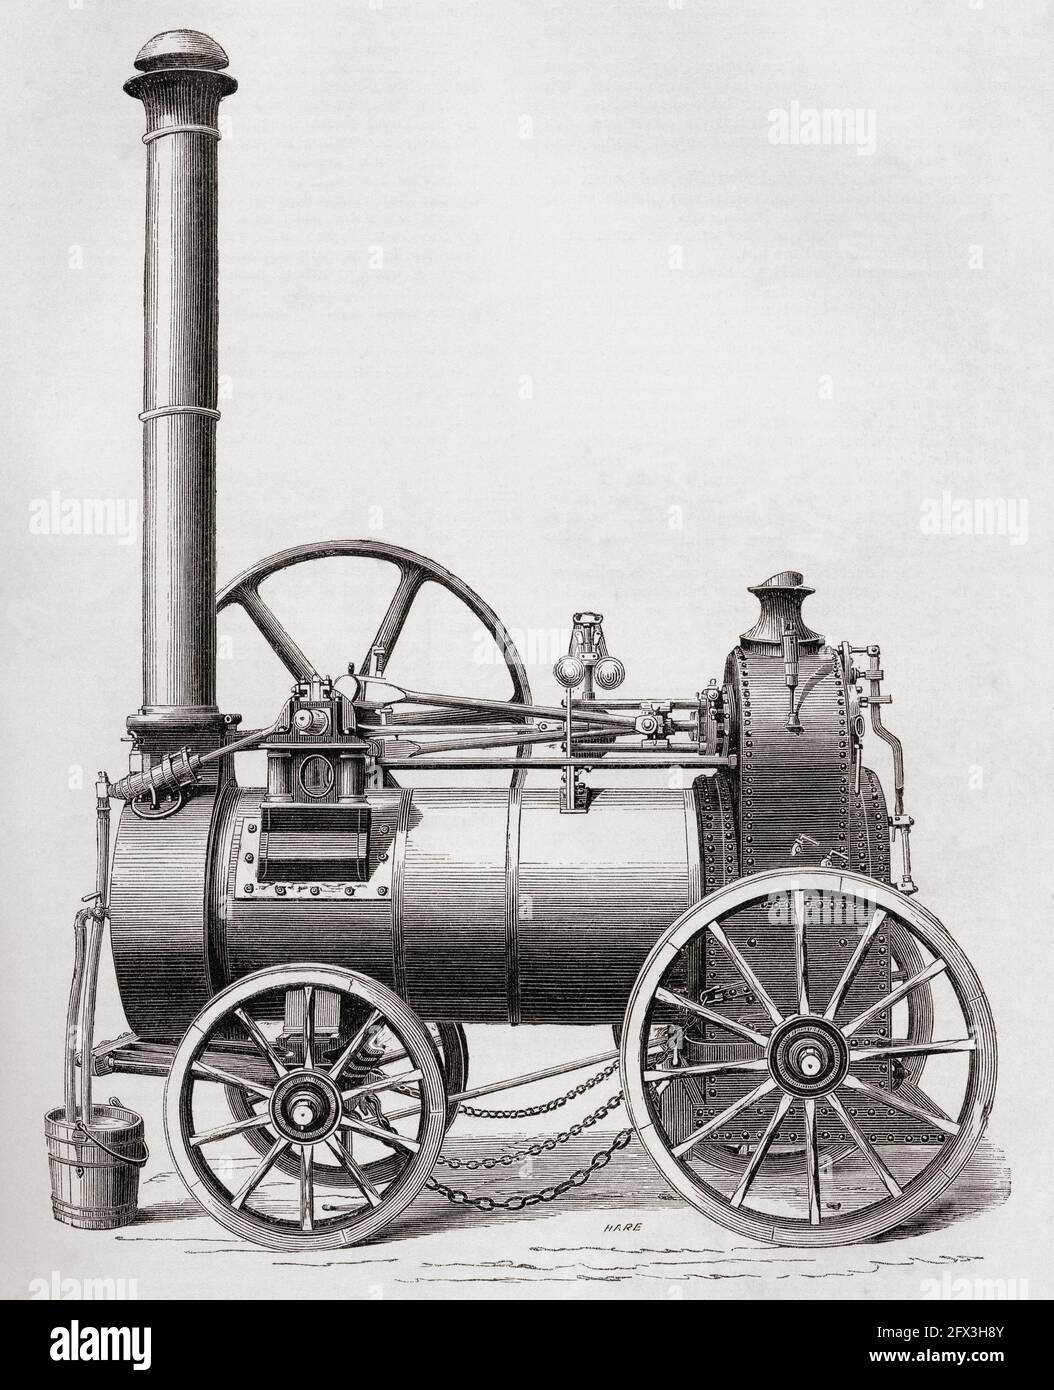 R. Hornsby y el motor de vapor portátil de dos cilindros de Son. De Una historia concisa de la Exposición Internacional de 1862, publicada en 1862. Foto de stock